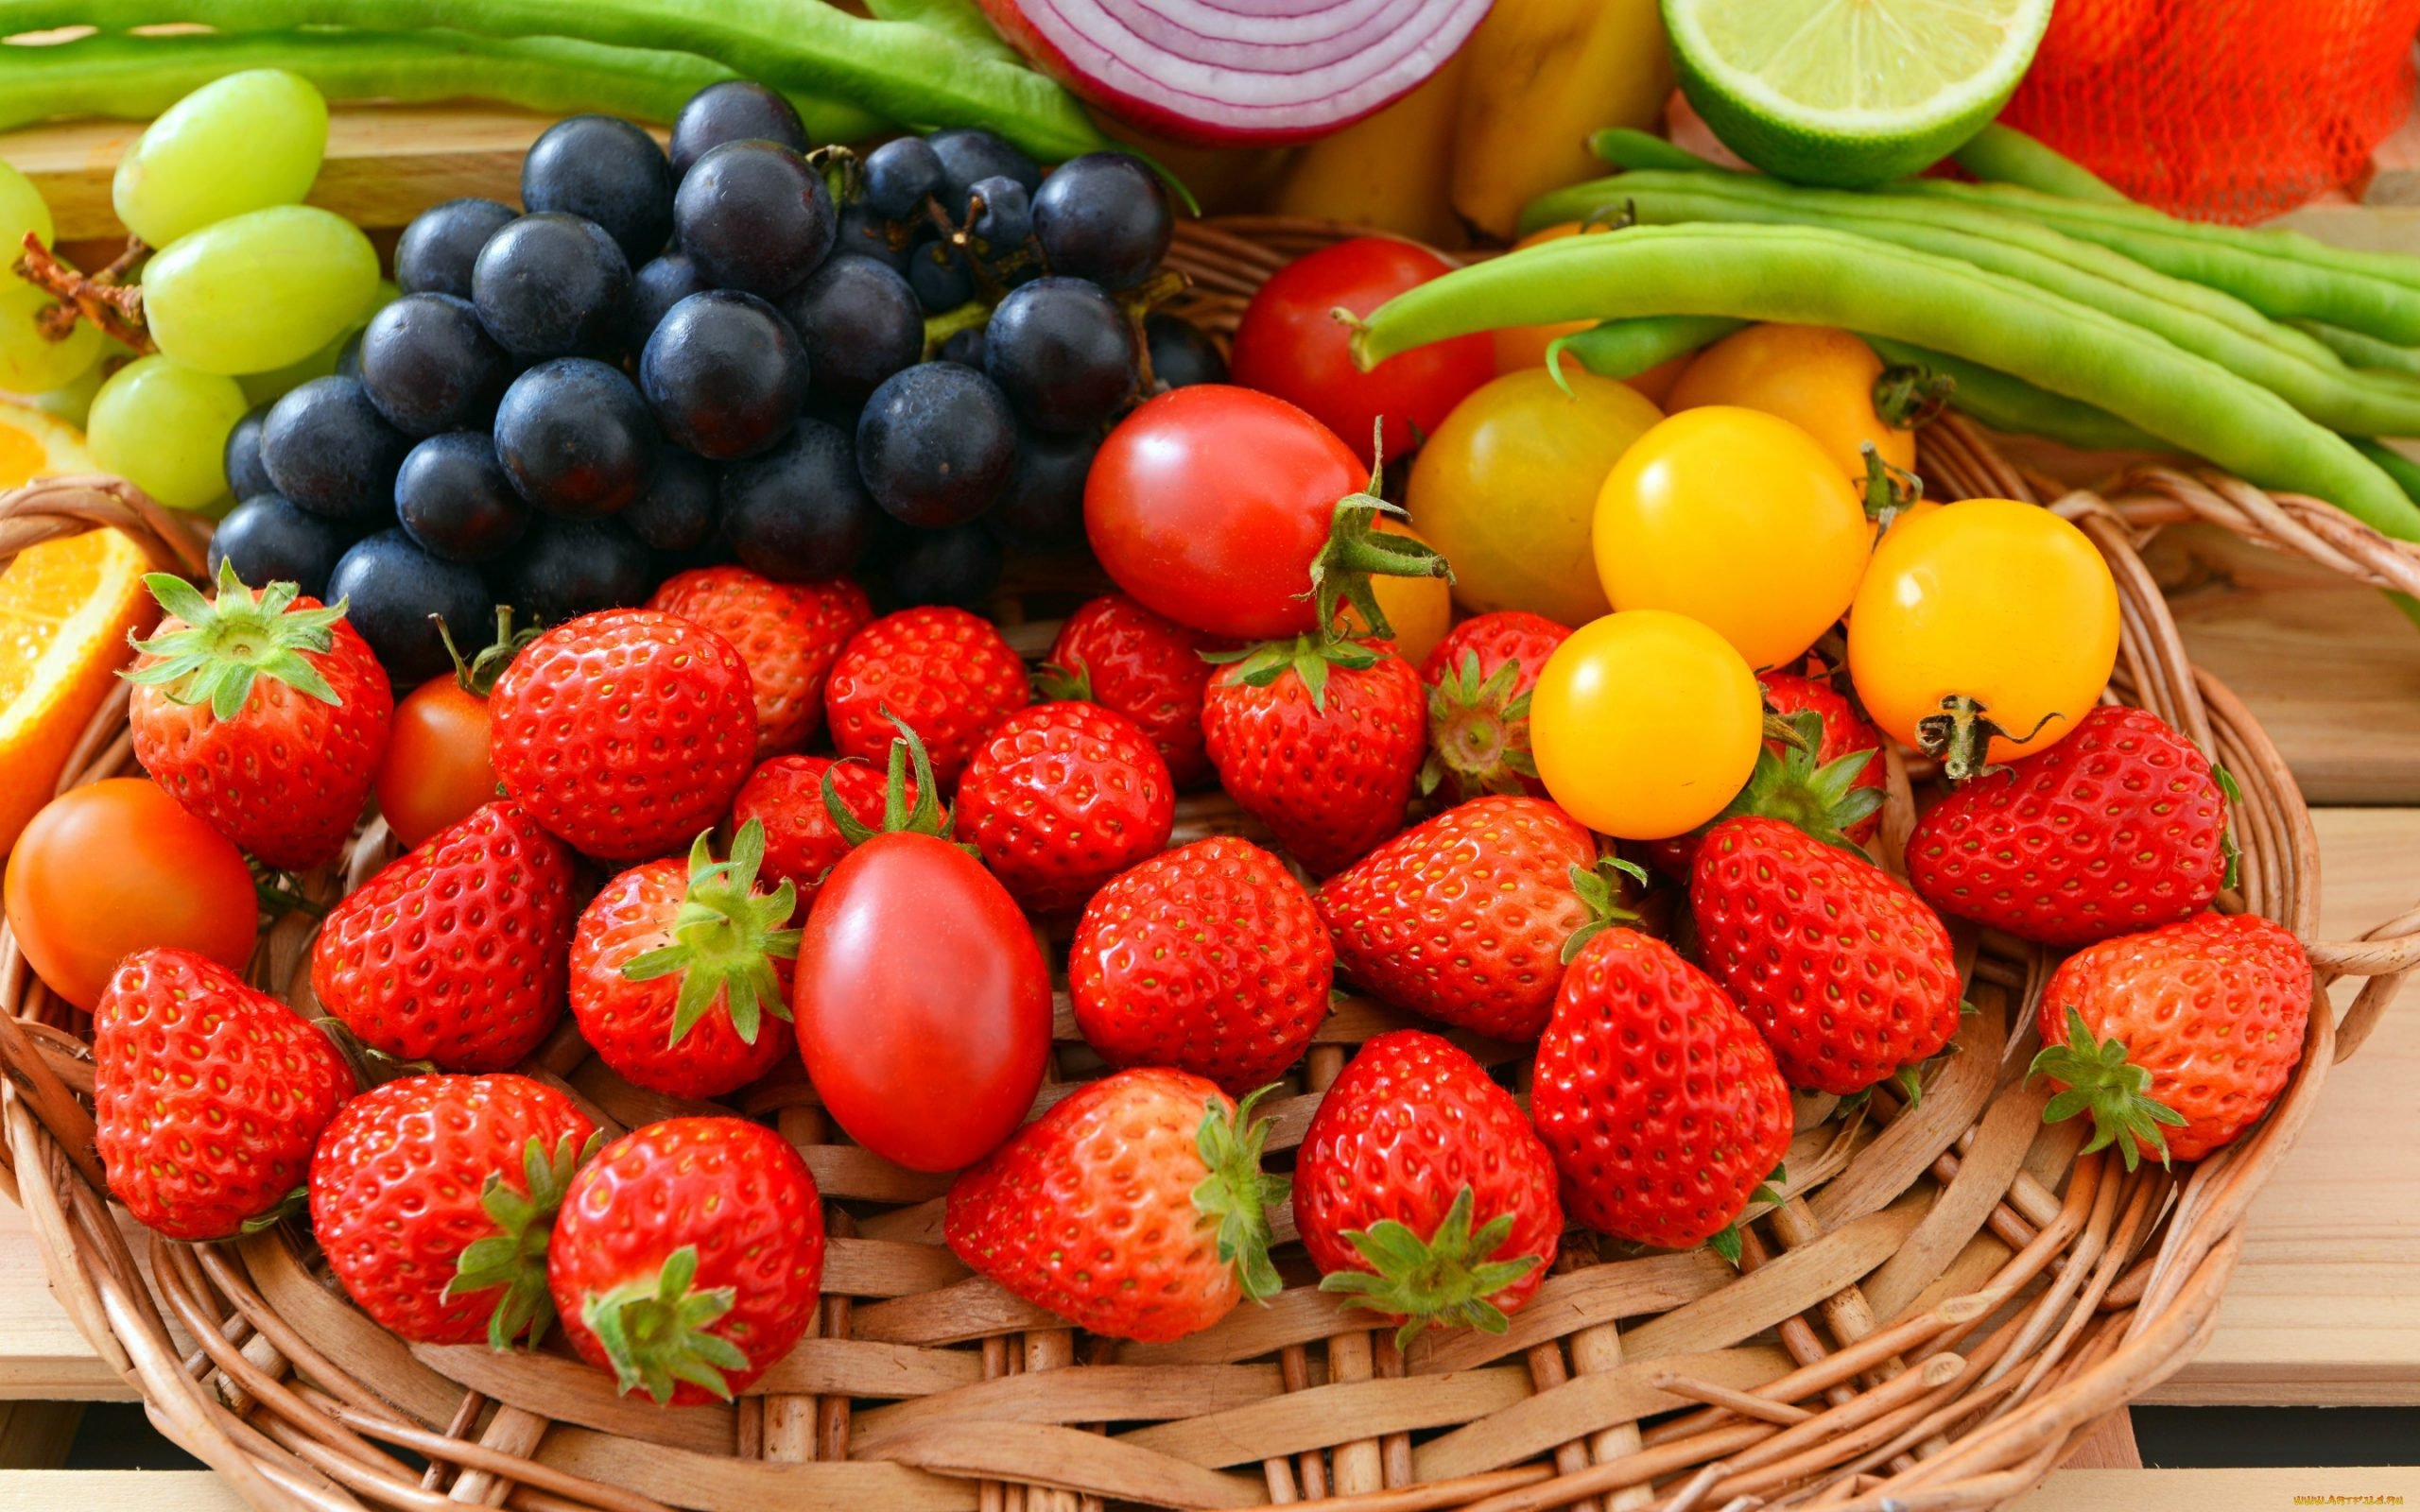 Лето время овощей и фруктов. Овощи и фрукты. Овощи, фрукты, ягоды. Фрукты и ягоды. Свежие овощи и фрукты.